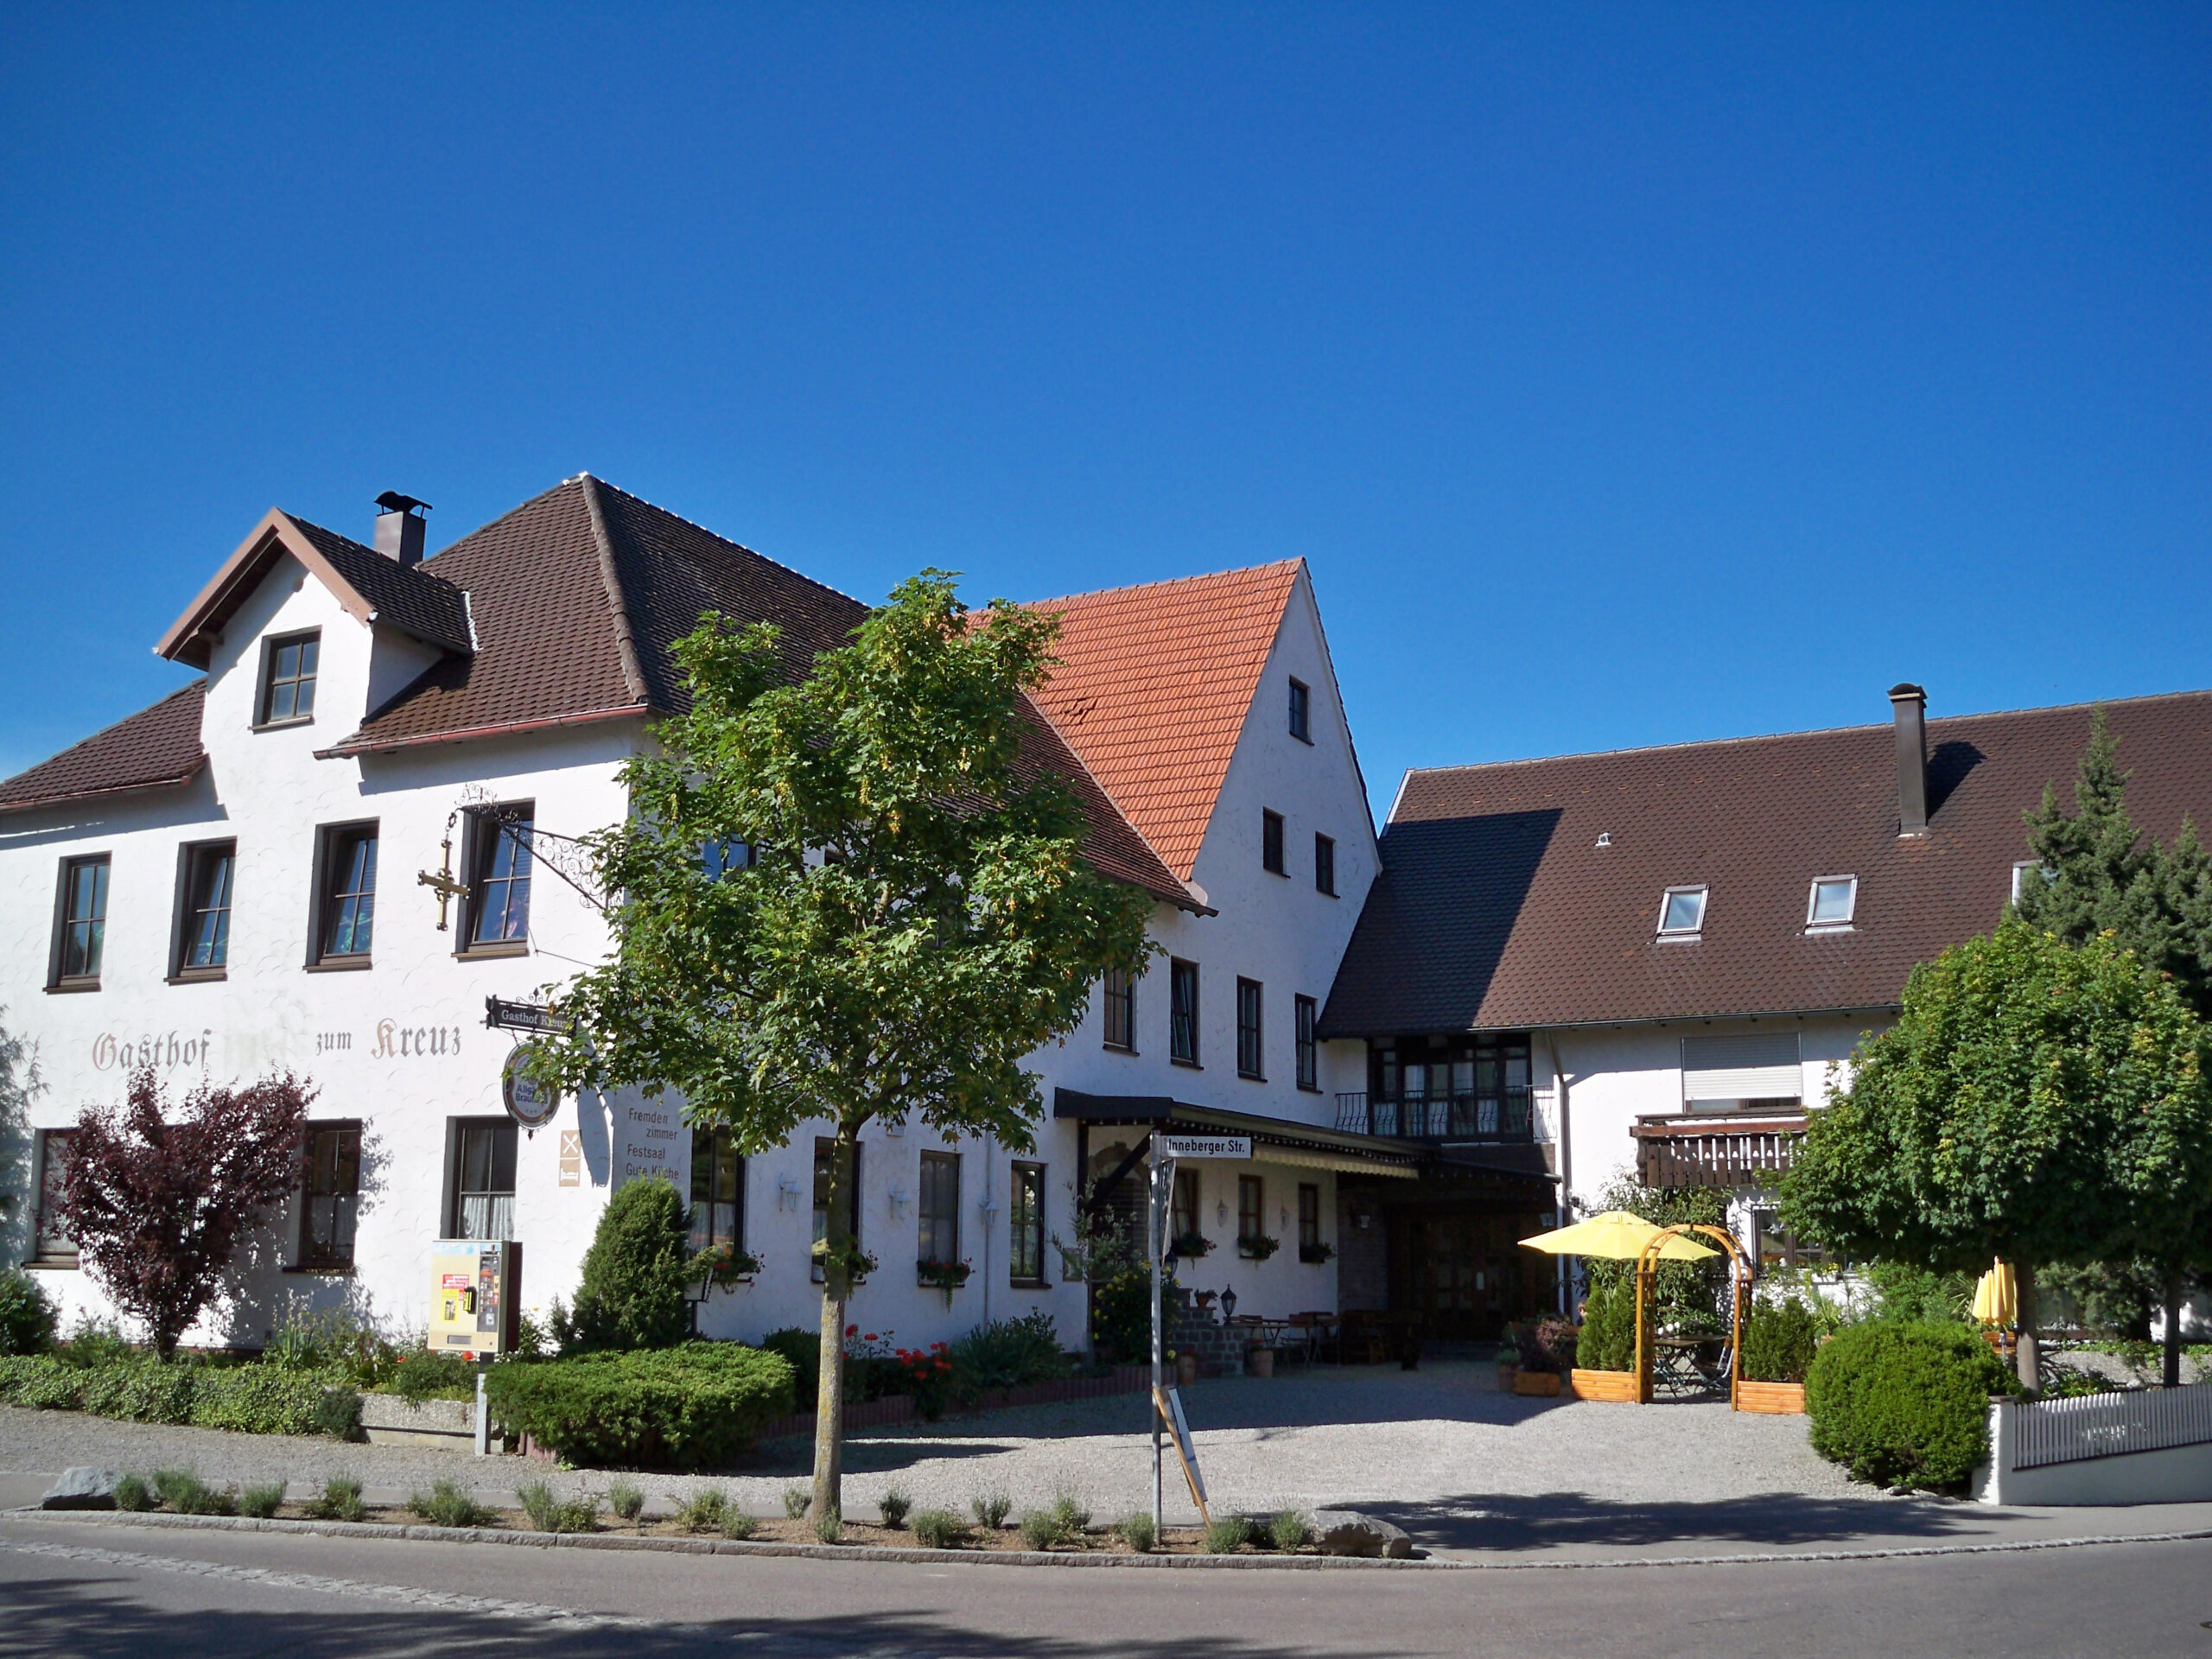 Gasthof & Gästezimmer zum Kreuz in Egg bei Woringen